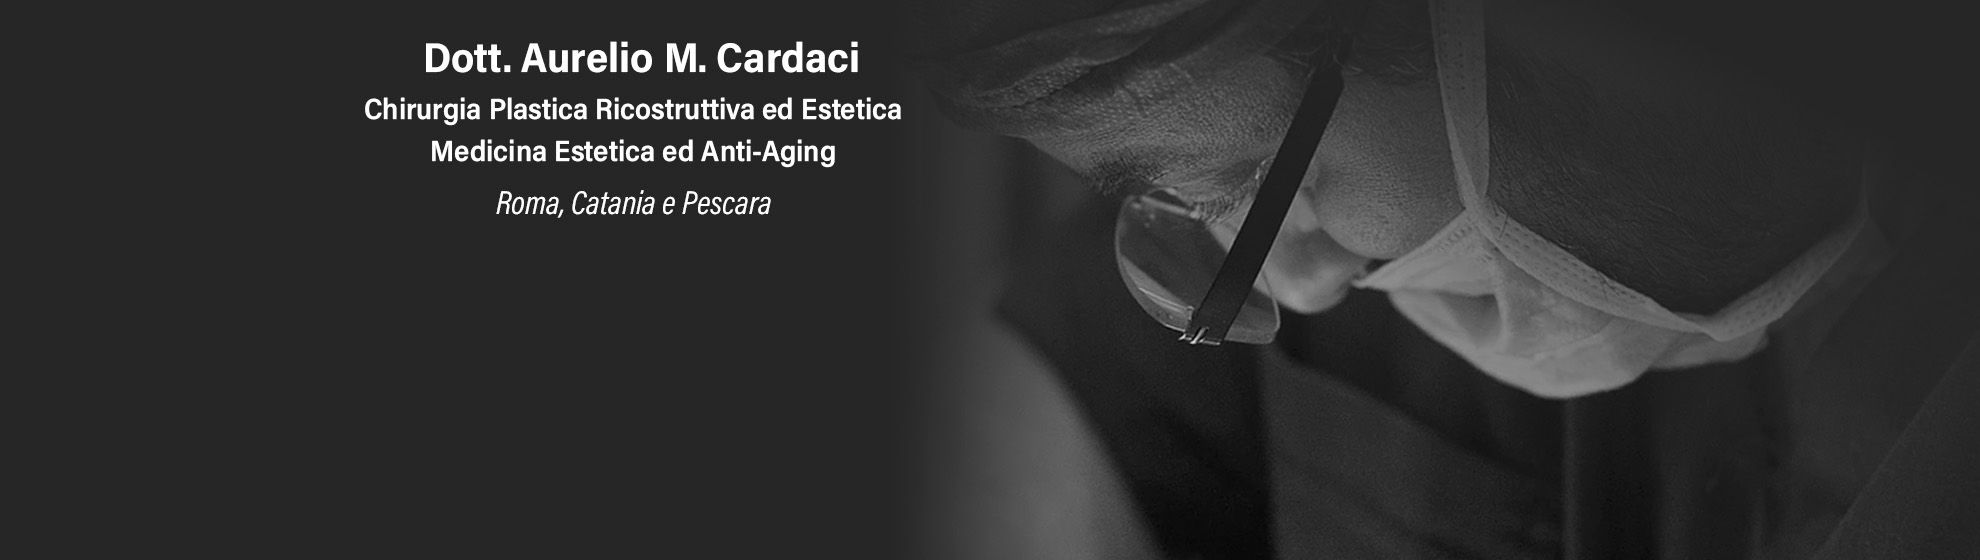 Dott. Aurelio M. Cardaci